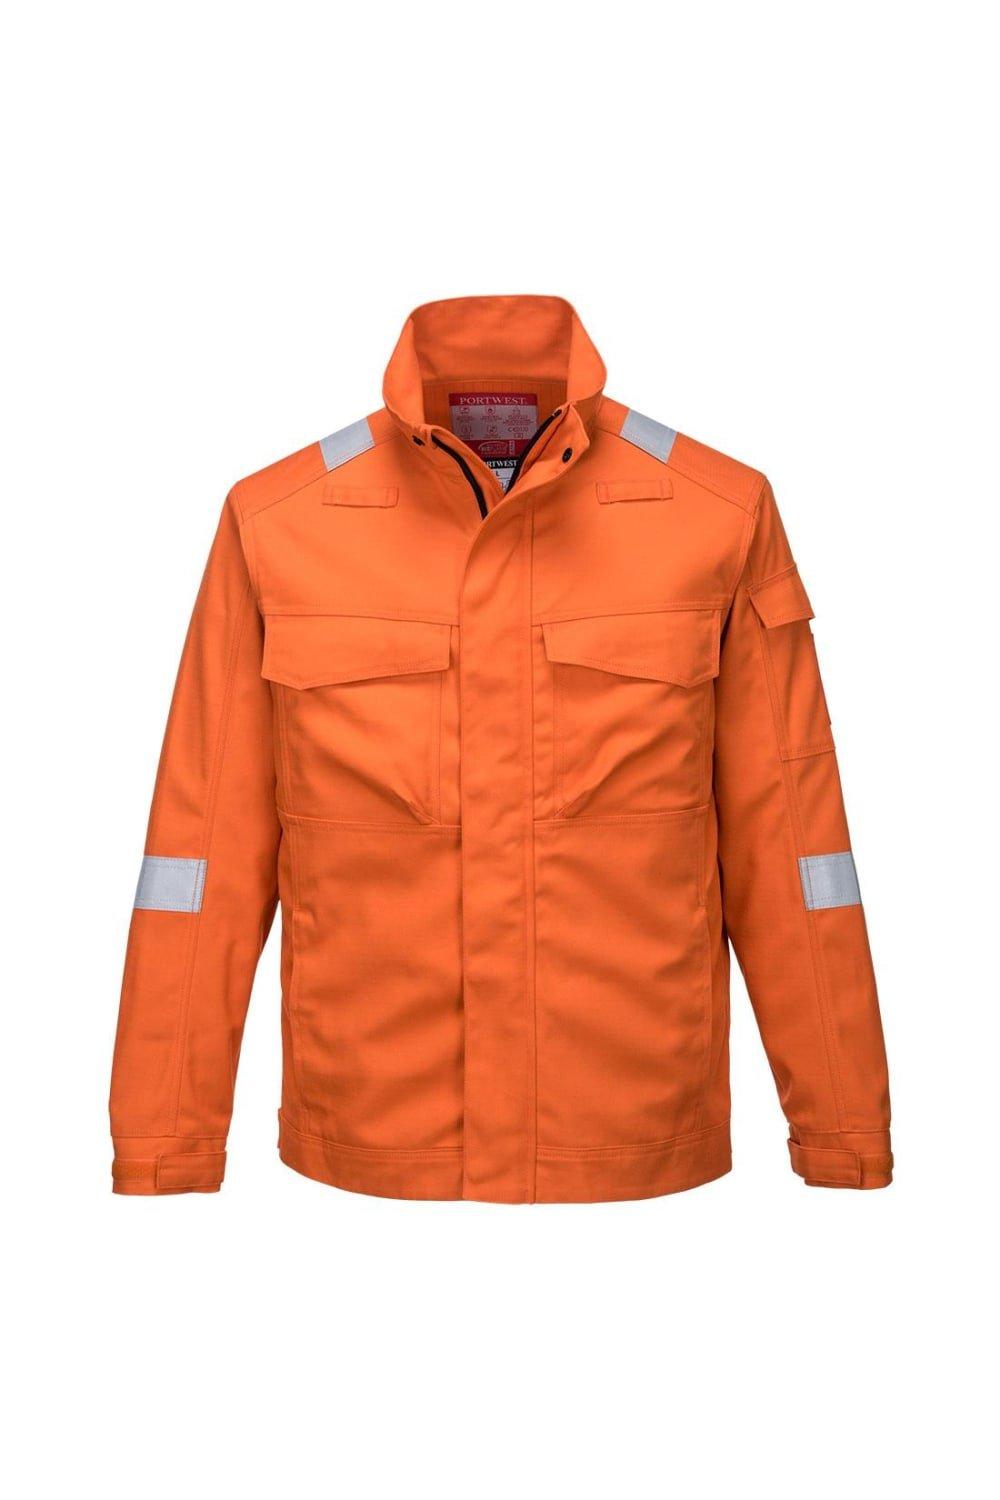 Куртка FR68 Bizflame Ultra Portwest, оранжевый